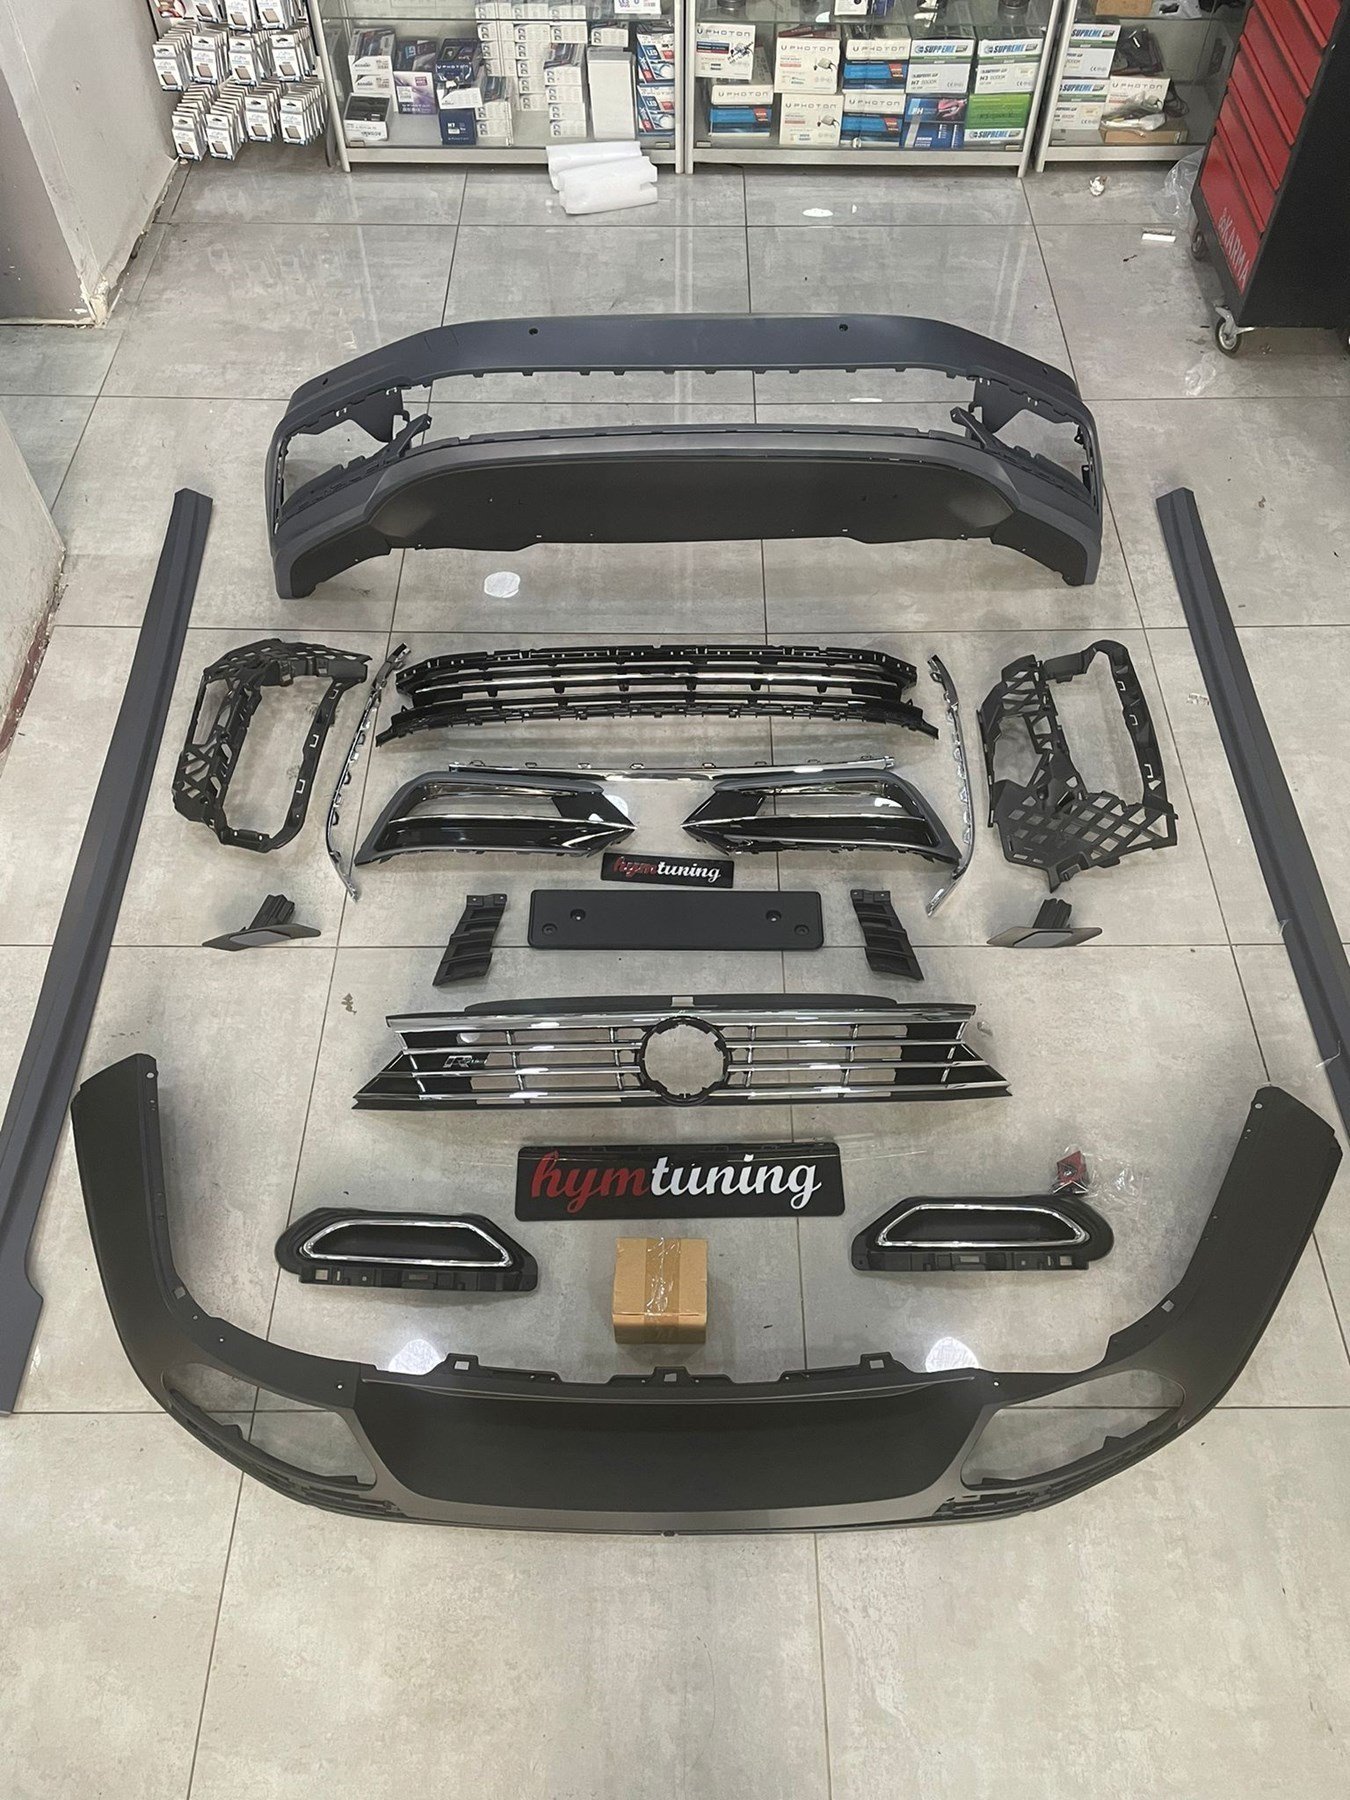 VW Passat B8 Rline Bodykit Seti Ön Tampon Difüzör Marşpiyel, 2015 2018 Uyumlu